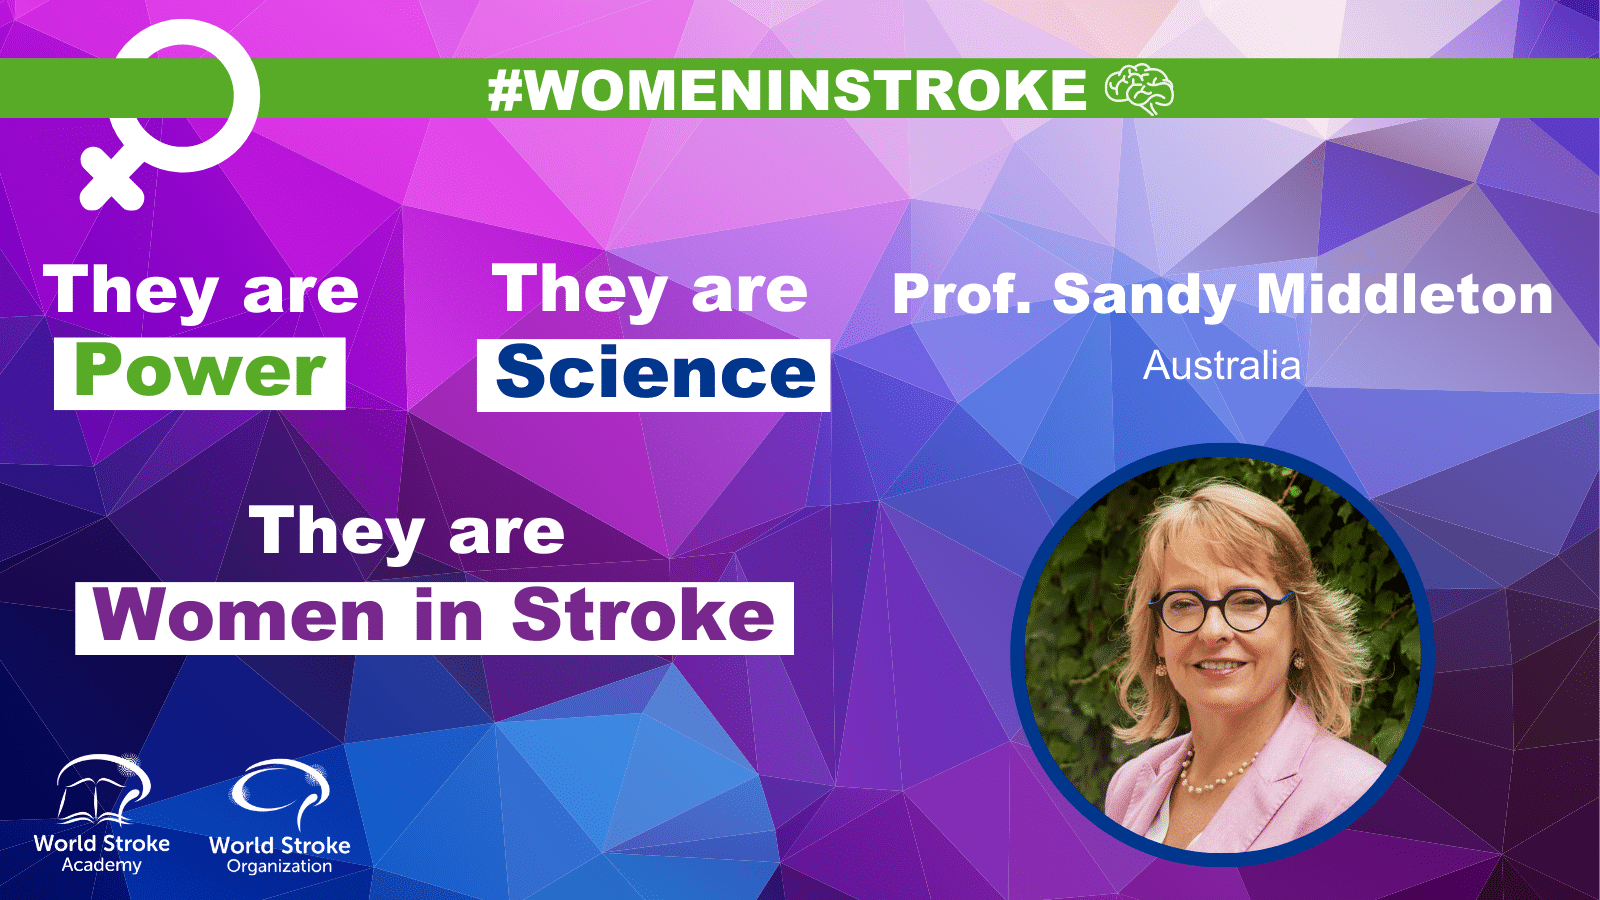 Women in Stroke – Sandy Middleton